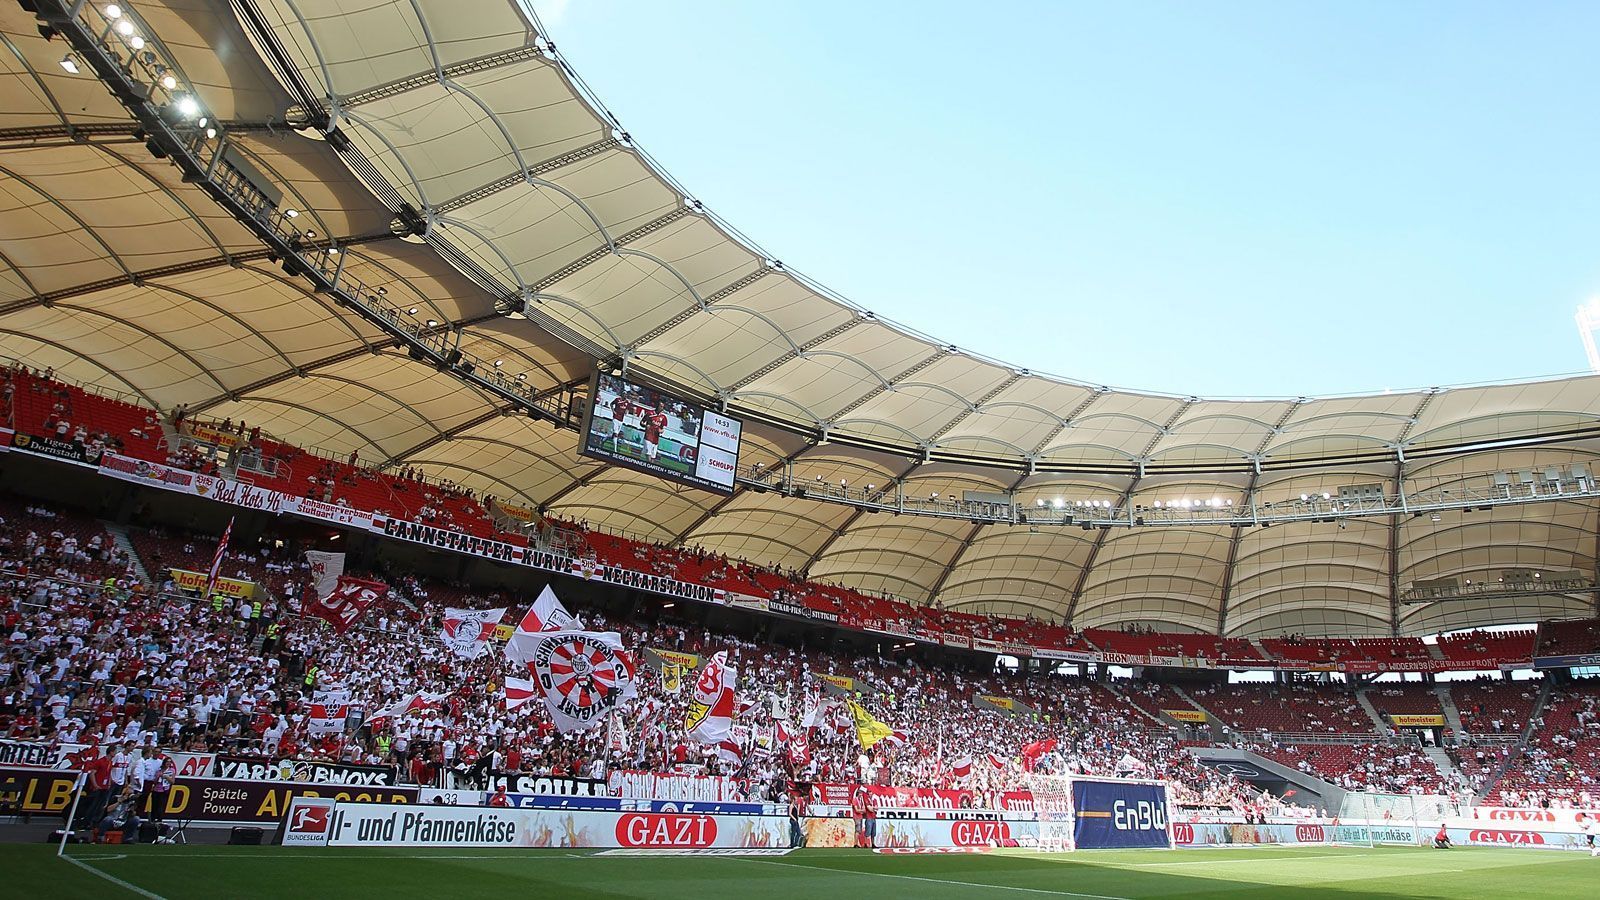 
                <strong>VfB Stuttgart</strong><br>
                Stadion: Mercedes-Benz Arena (60.449 Plätze) - Fans beim Saisonauftakt: 8000 - Fans am 5. Spieltag: 0* - Gegner: 1. FC Köln*Gestiegene Infektionszahlen machen auch in Stuttgart einen Stadionbesuch aktuell unmöglich.
              